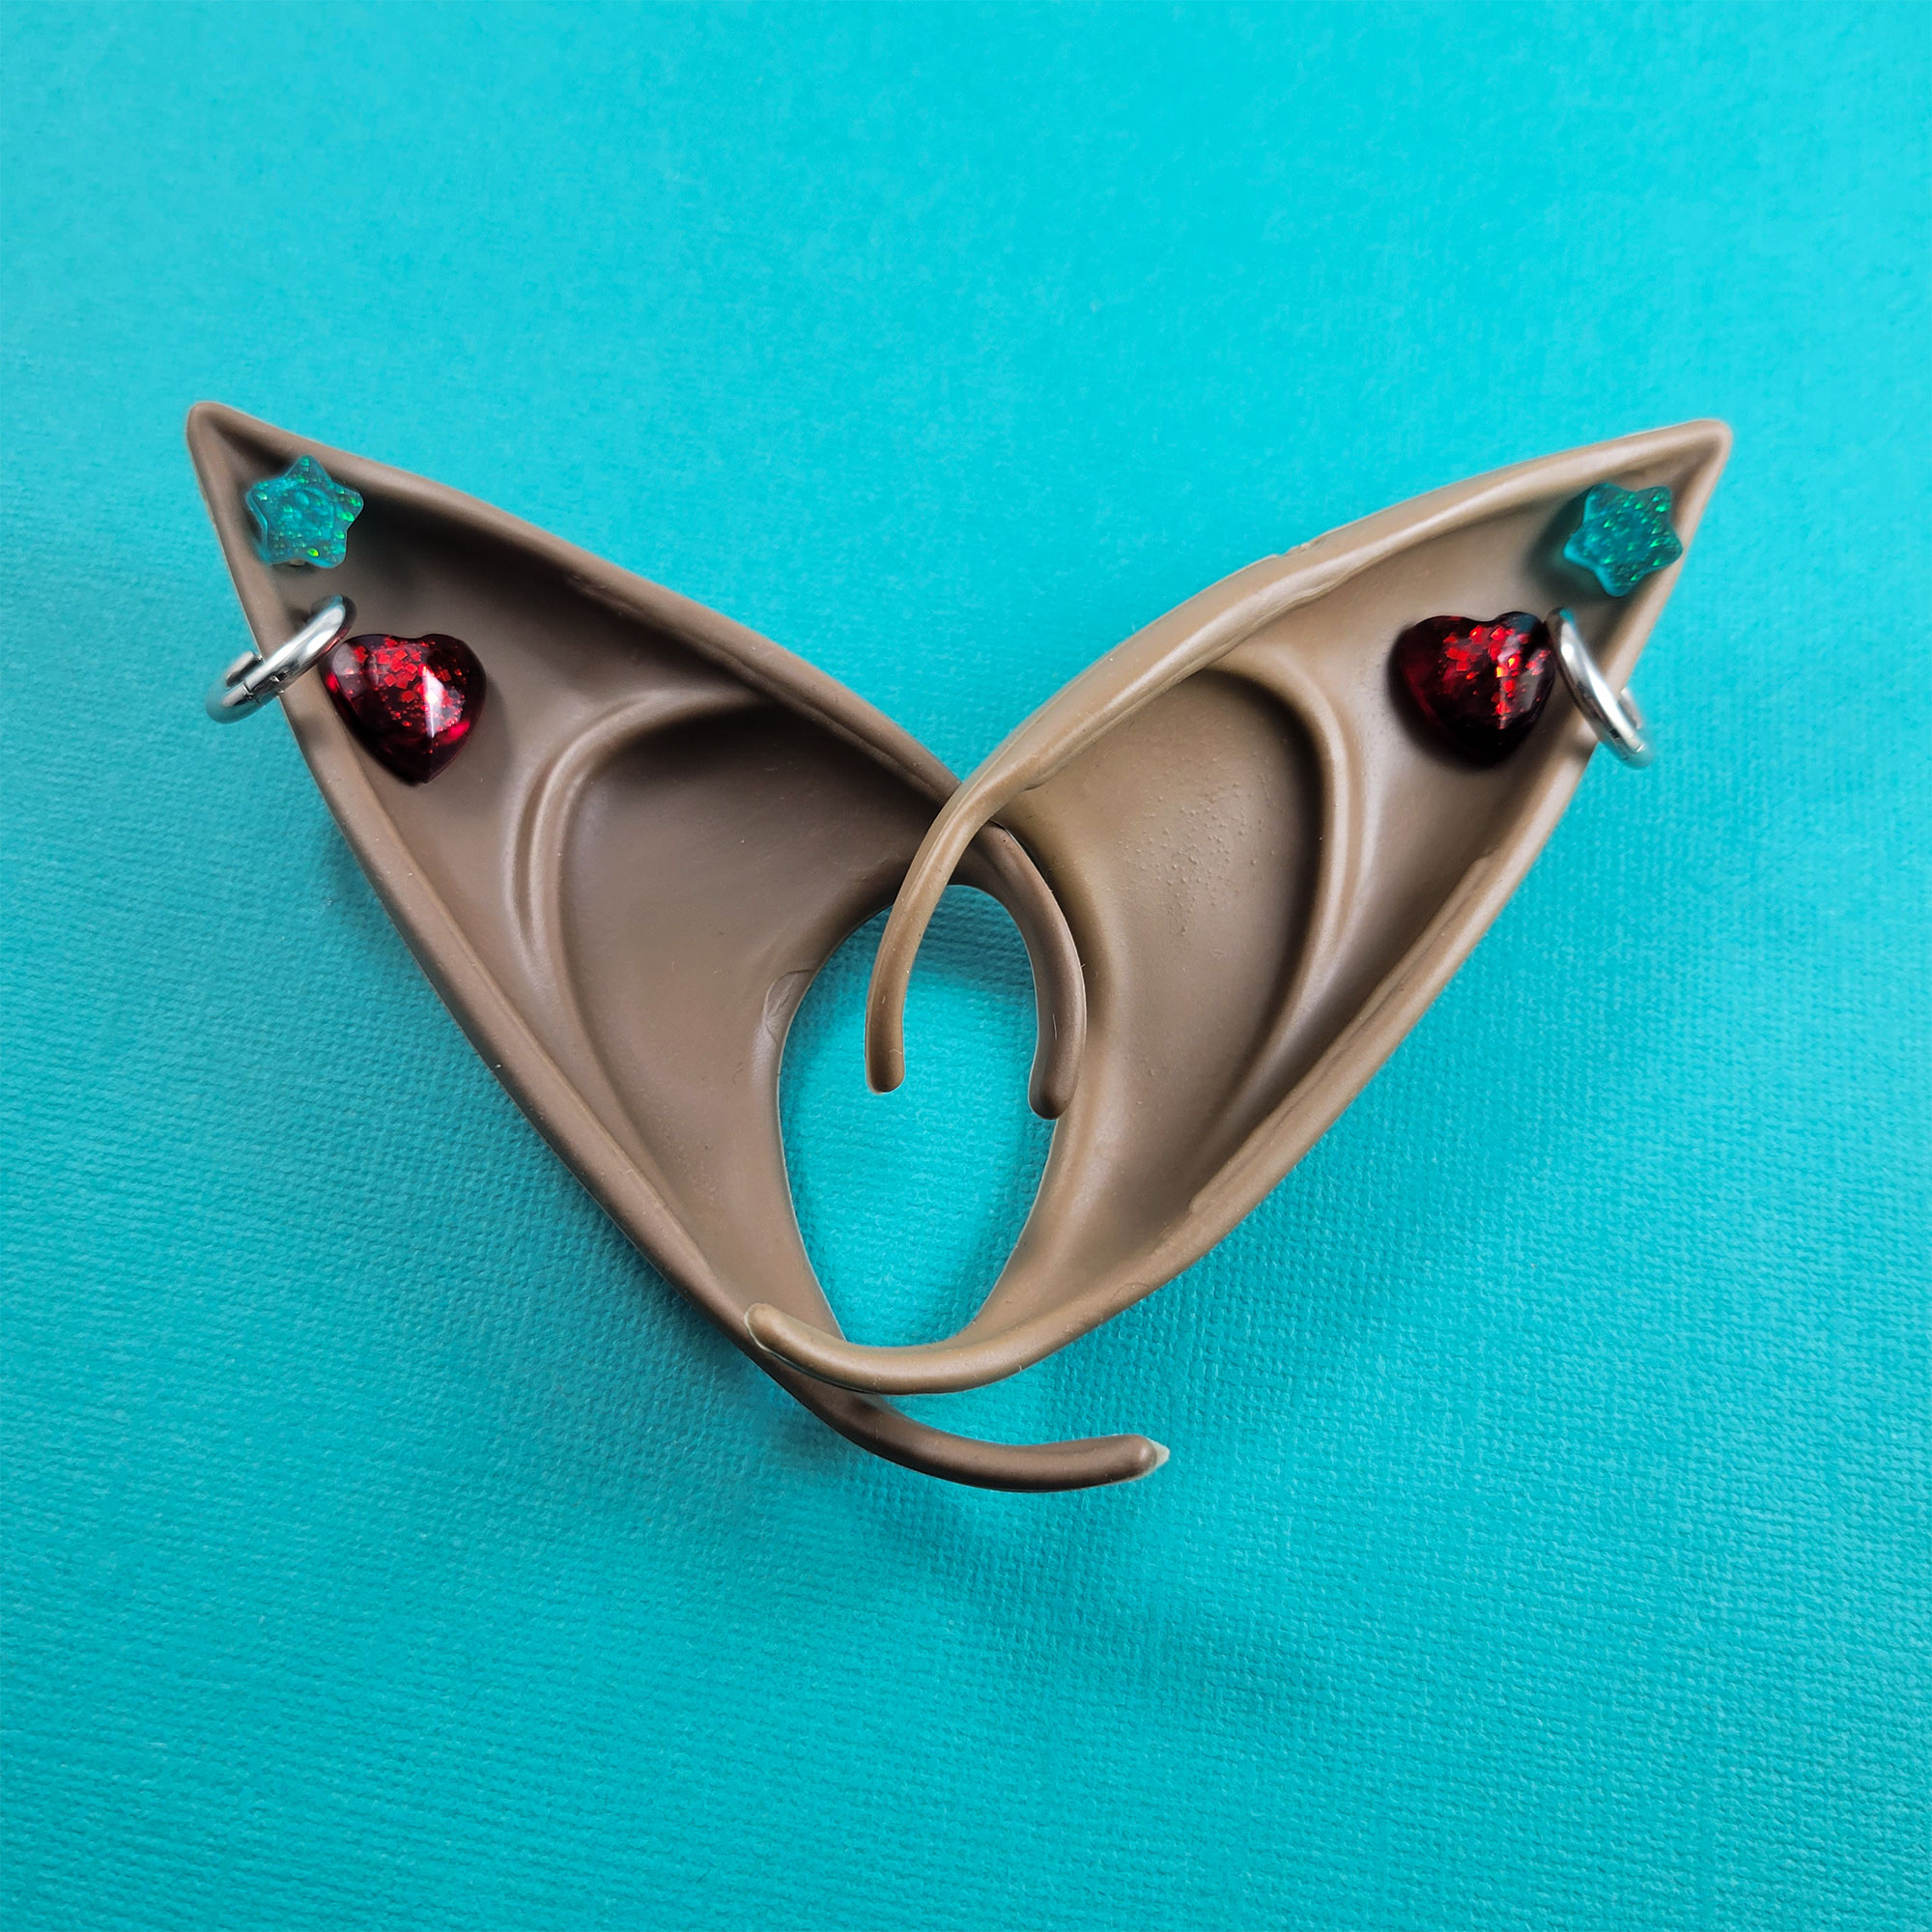 Brown Elf Ears with Teal & Red Earrings by Wilde Designs